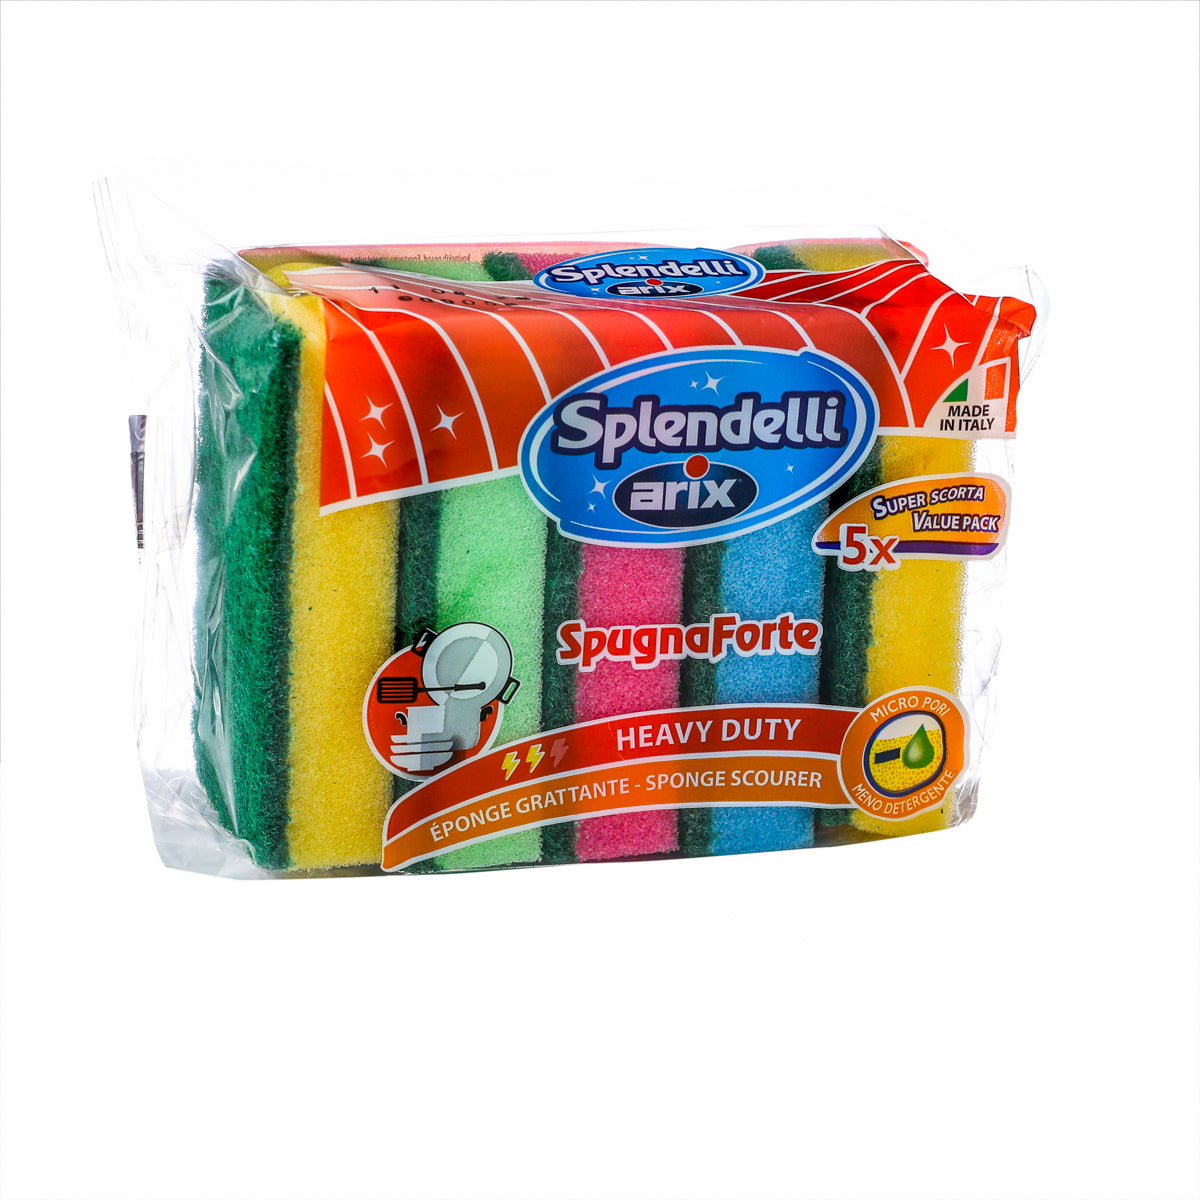 Synthetic Sponge Scourer w/Color - 5 PcsMulticolor synthetic scourer sponges that contain 5 pcs.